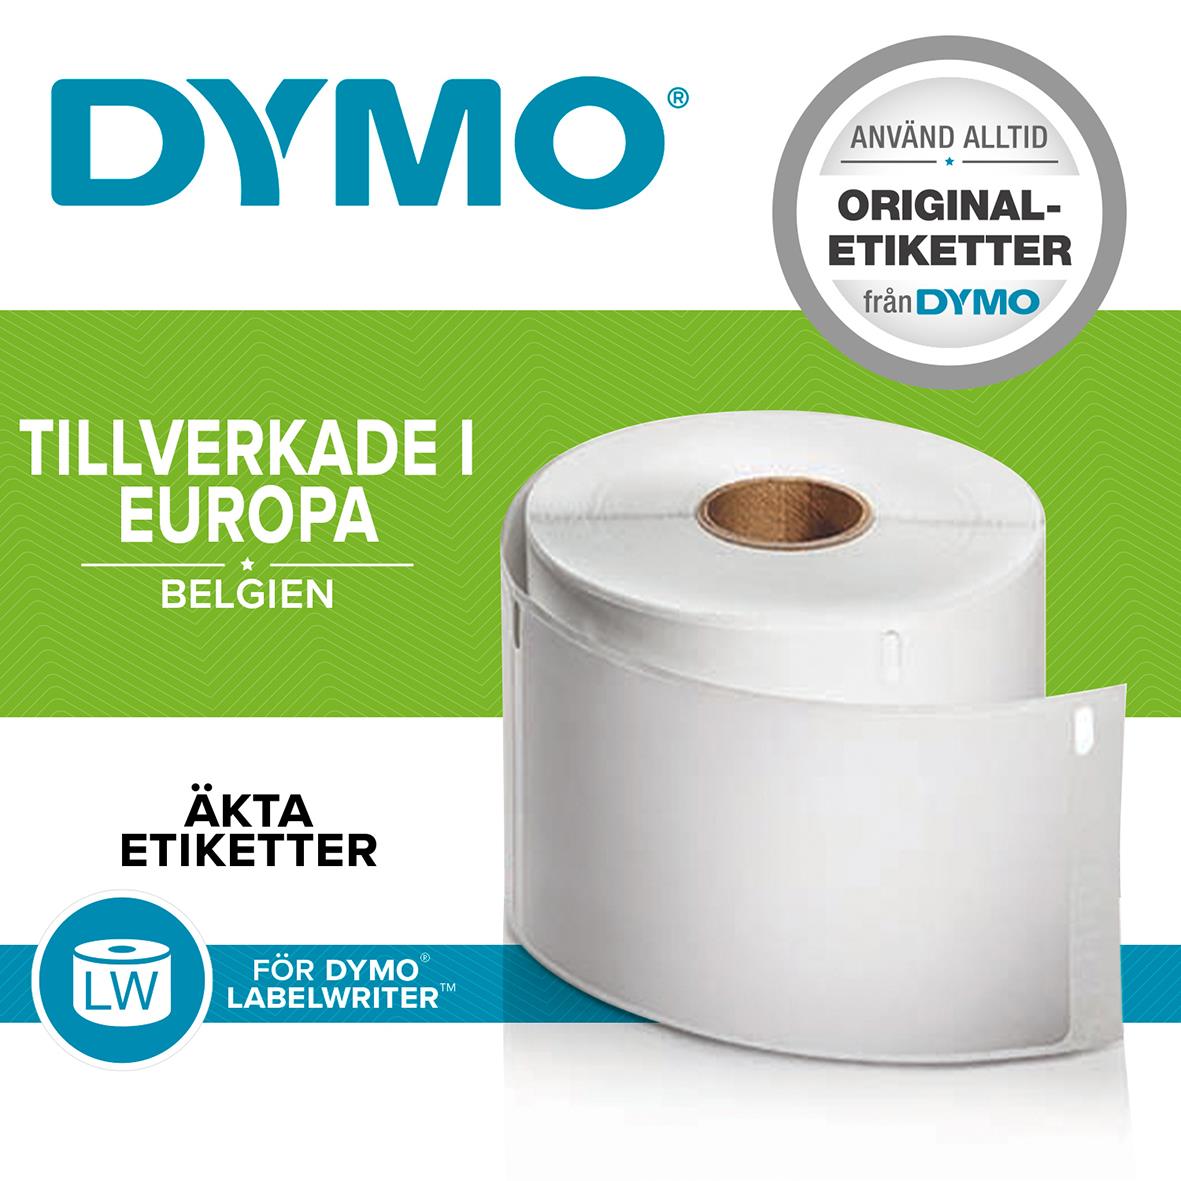 Etikett Dymo Labelwriter hängmapp Vit 50x12mm 15120008_2